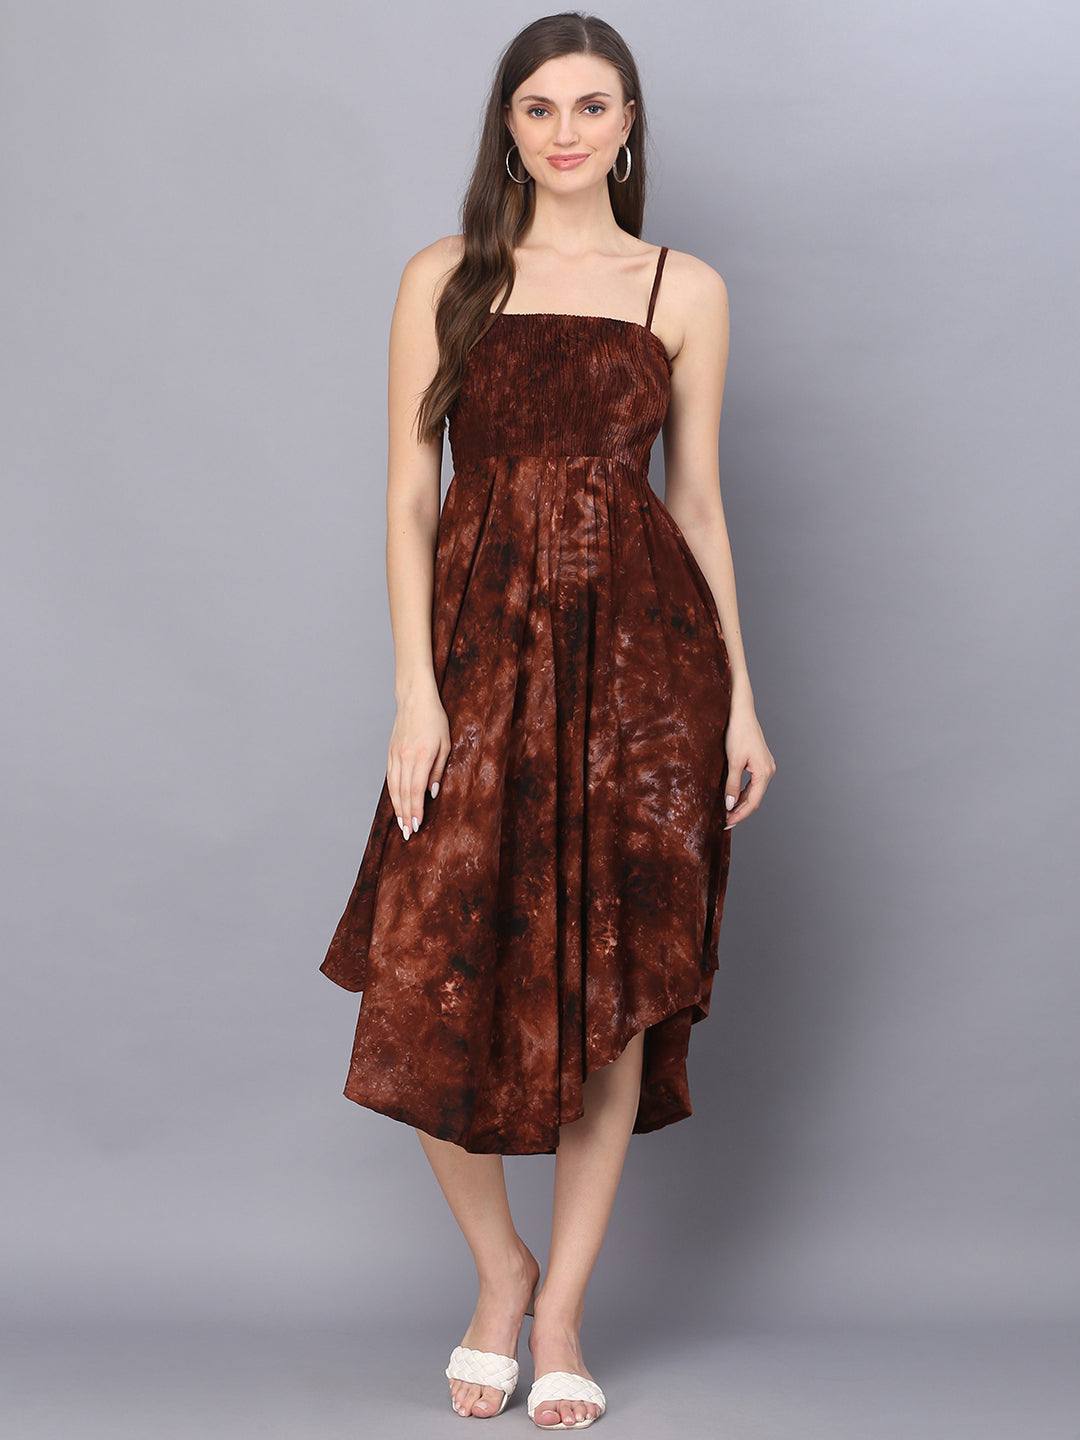 Tie Dye Printed Brown Shoulder Straps Long Bobbin Gown Dress